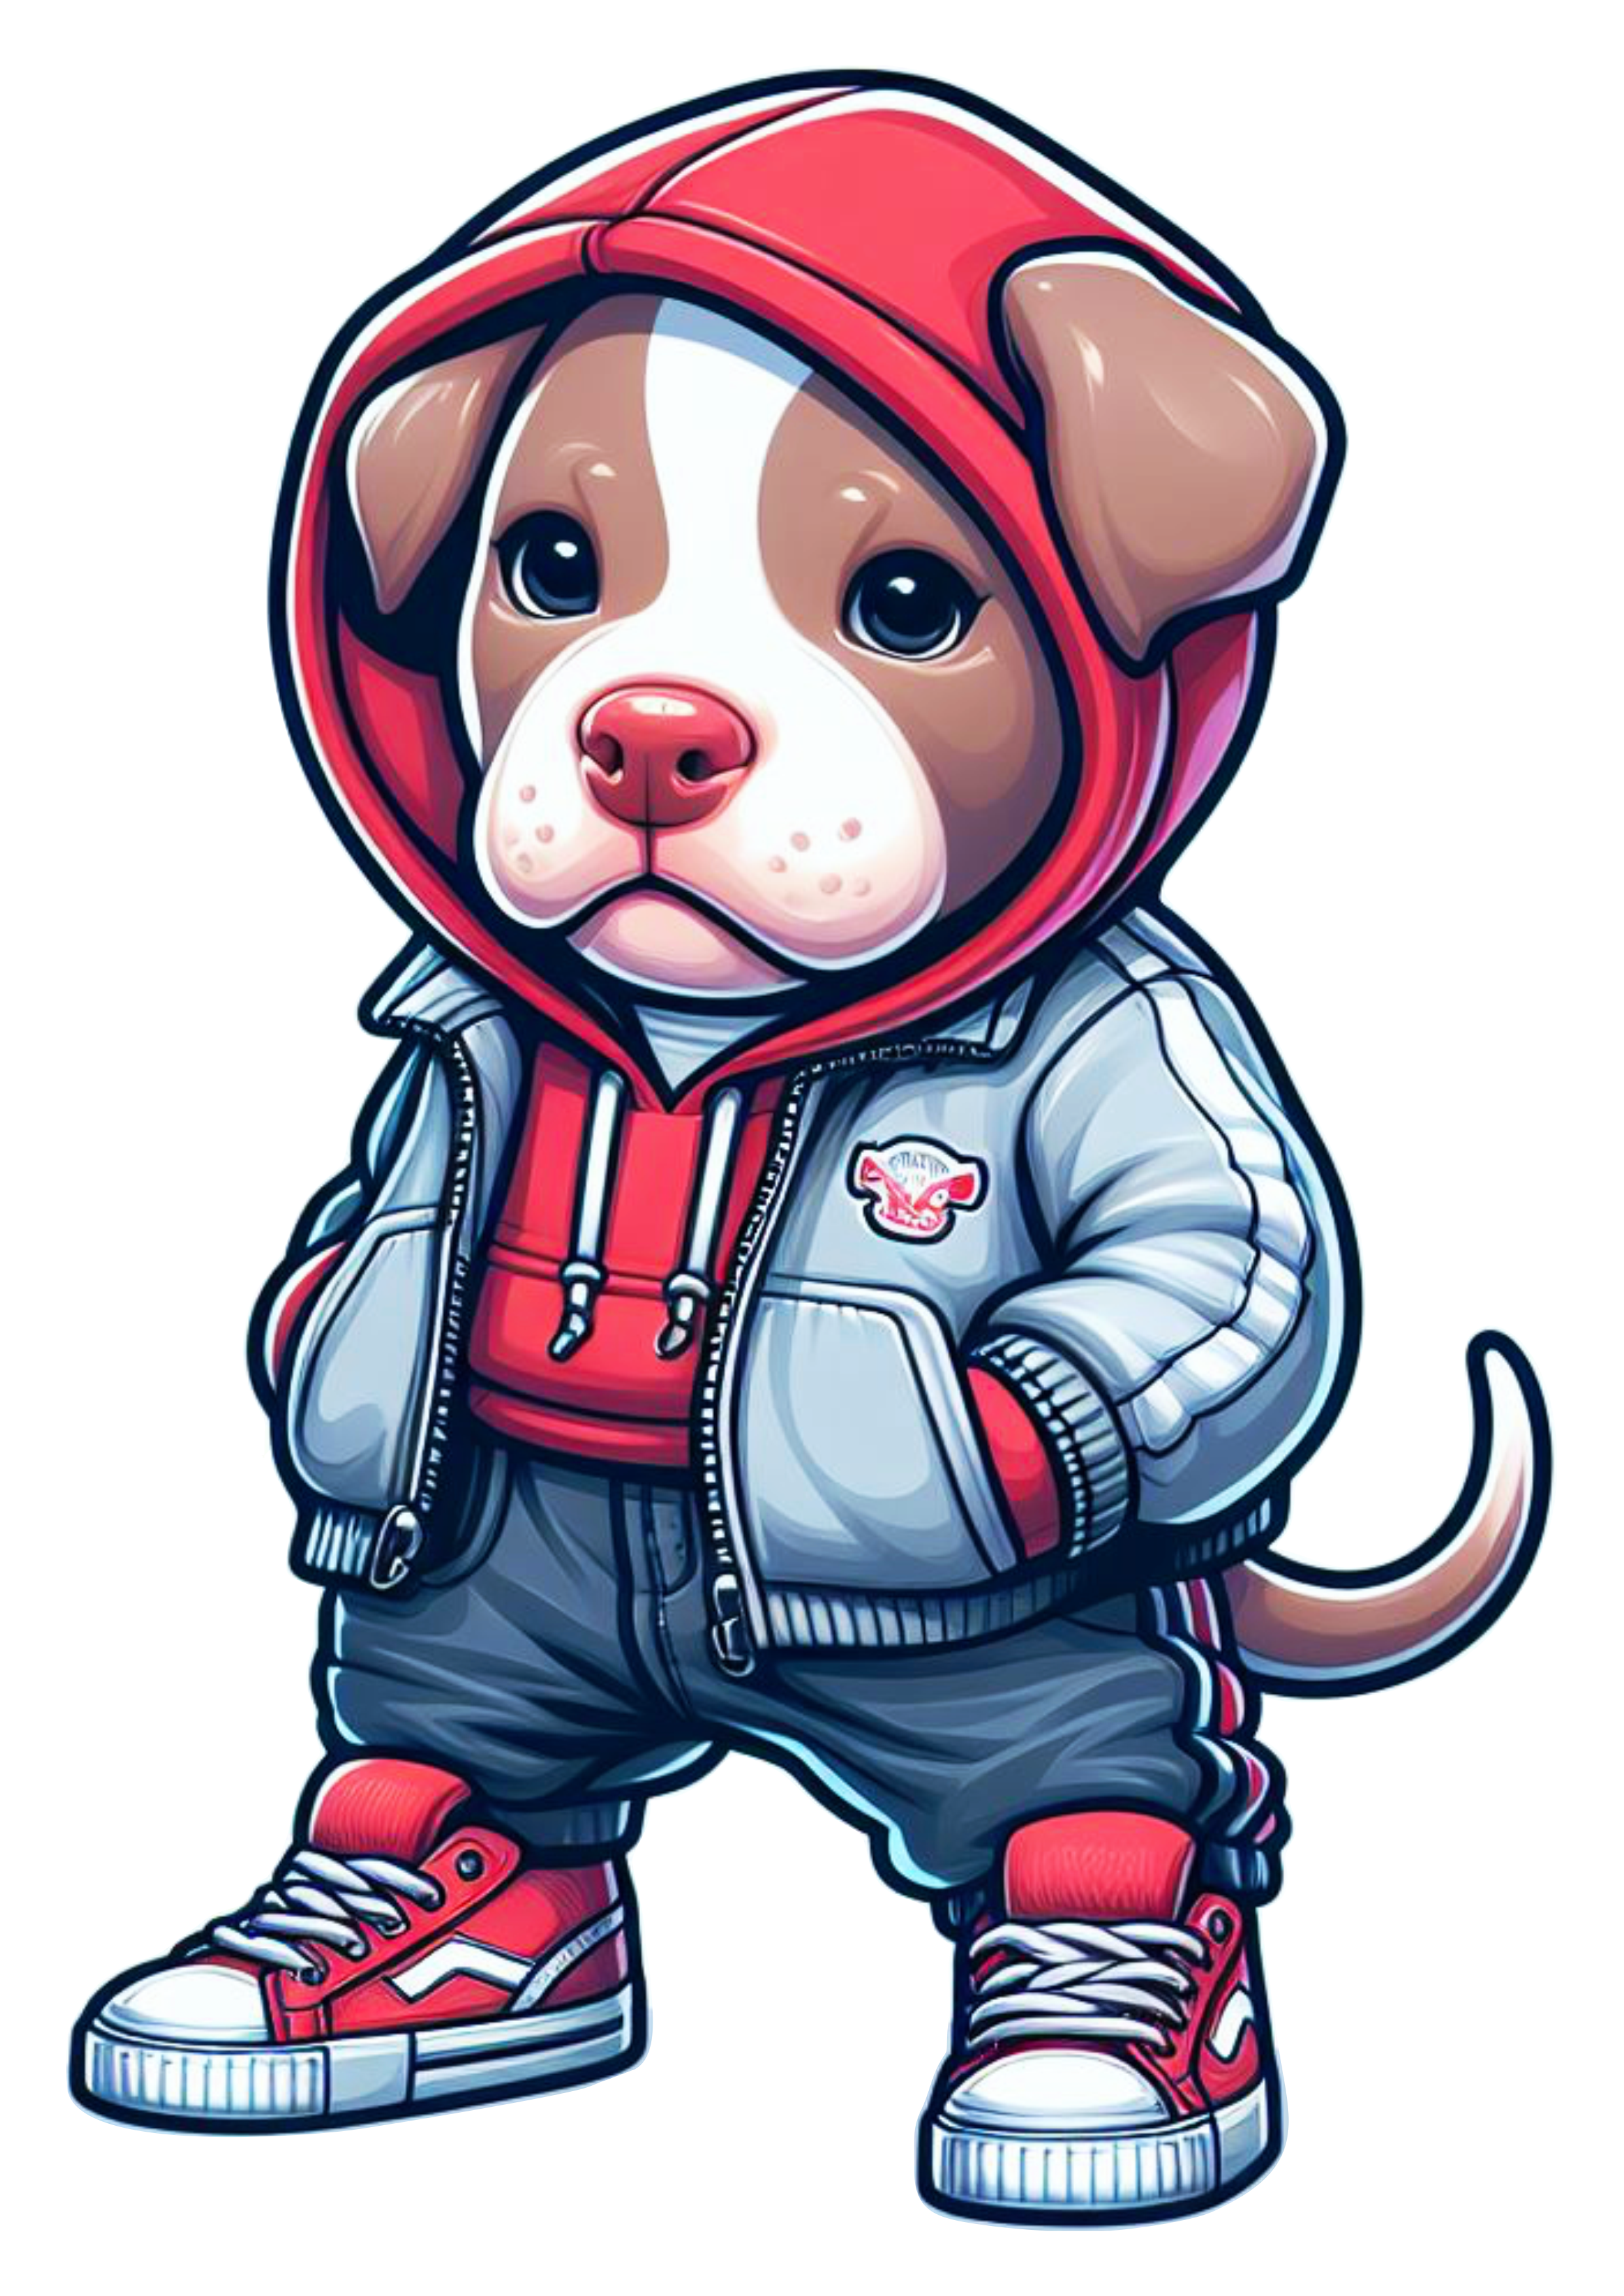 Pitbull cachorrinho de roupa de skatista desenho infantil blusão moletom vermelho png image ilustração artes gráficas fundo transparente